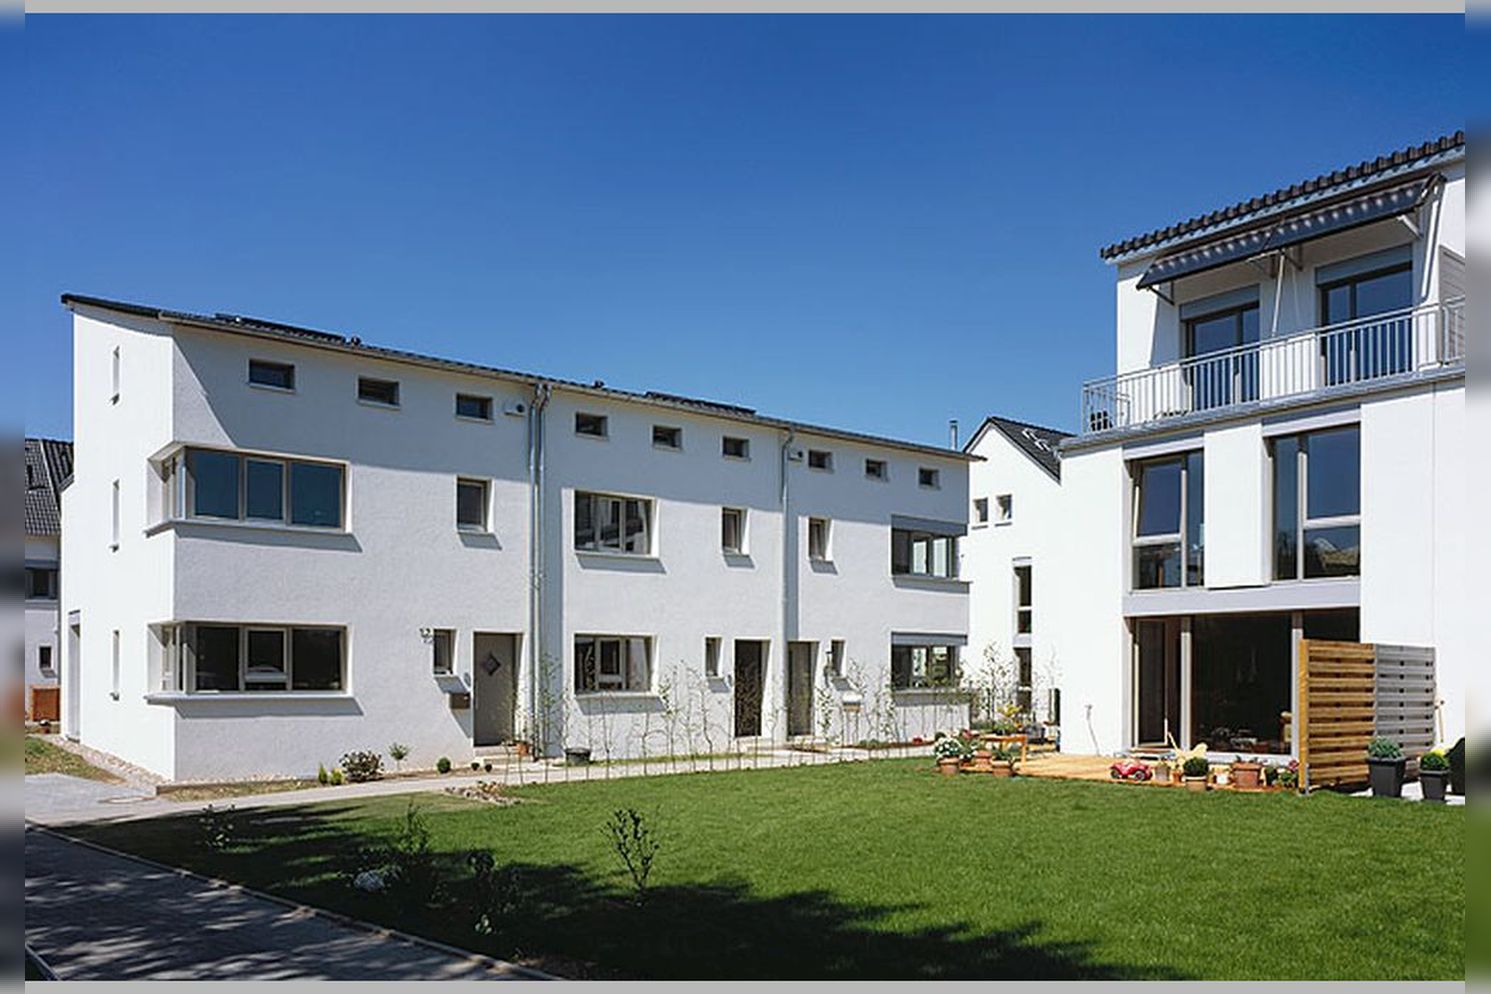 Immobilie Nr.D.dorf-Itter 100 - Reihenhäuser, Doppelhaushälften, Eigentumswohnungen auf Erbpacht - Bild 7.jpg